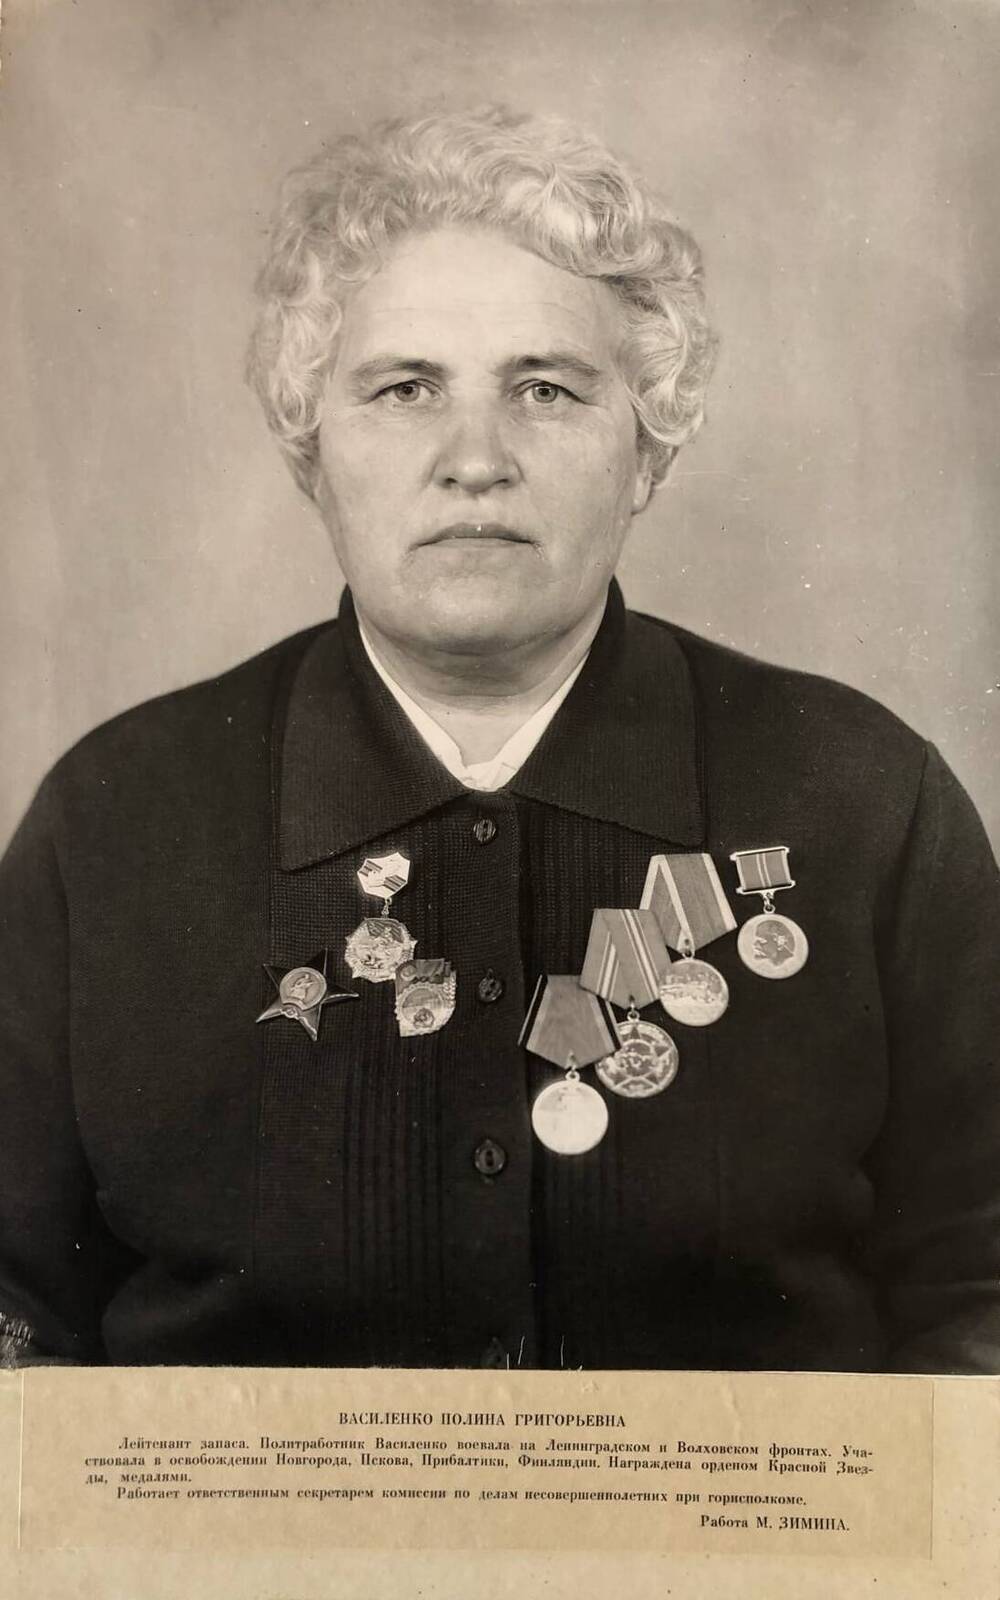 Фотография Василенко Полины Григорьевны, участницы Великой Отечественной войны 1941-1945 гг.